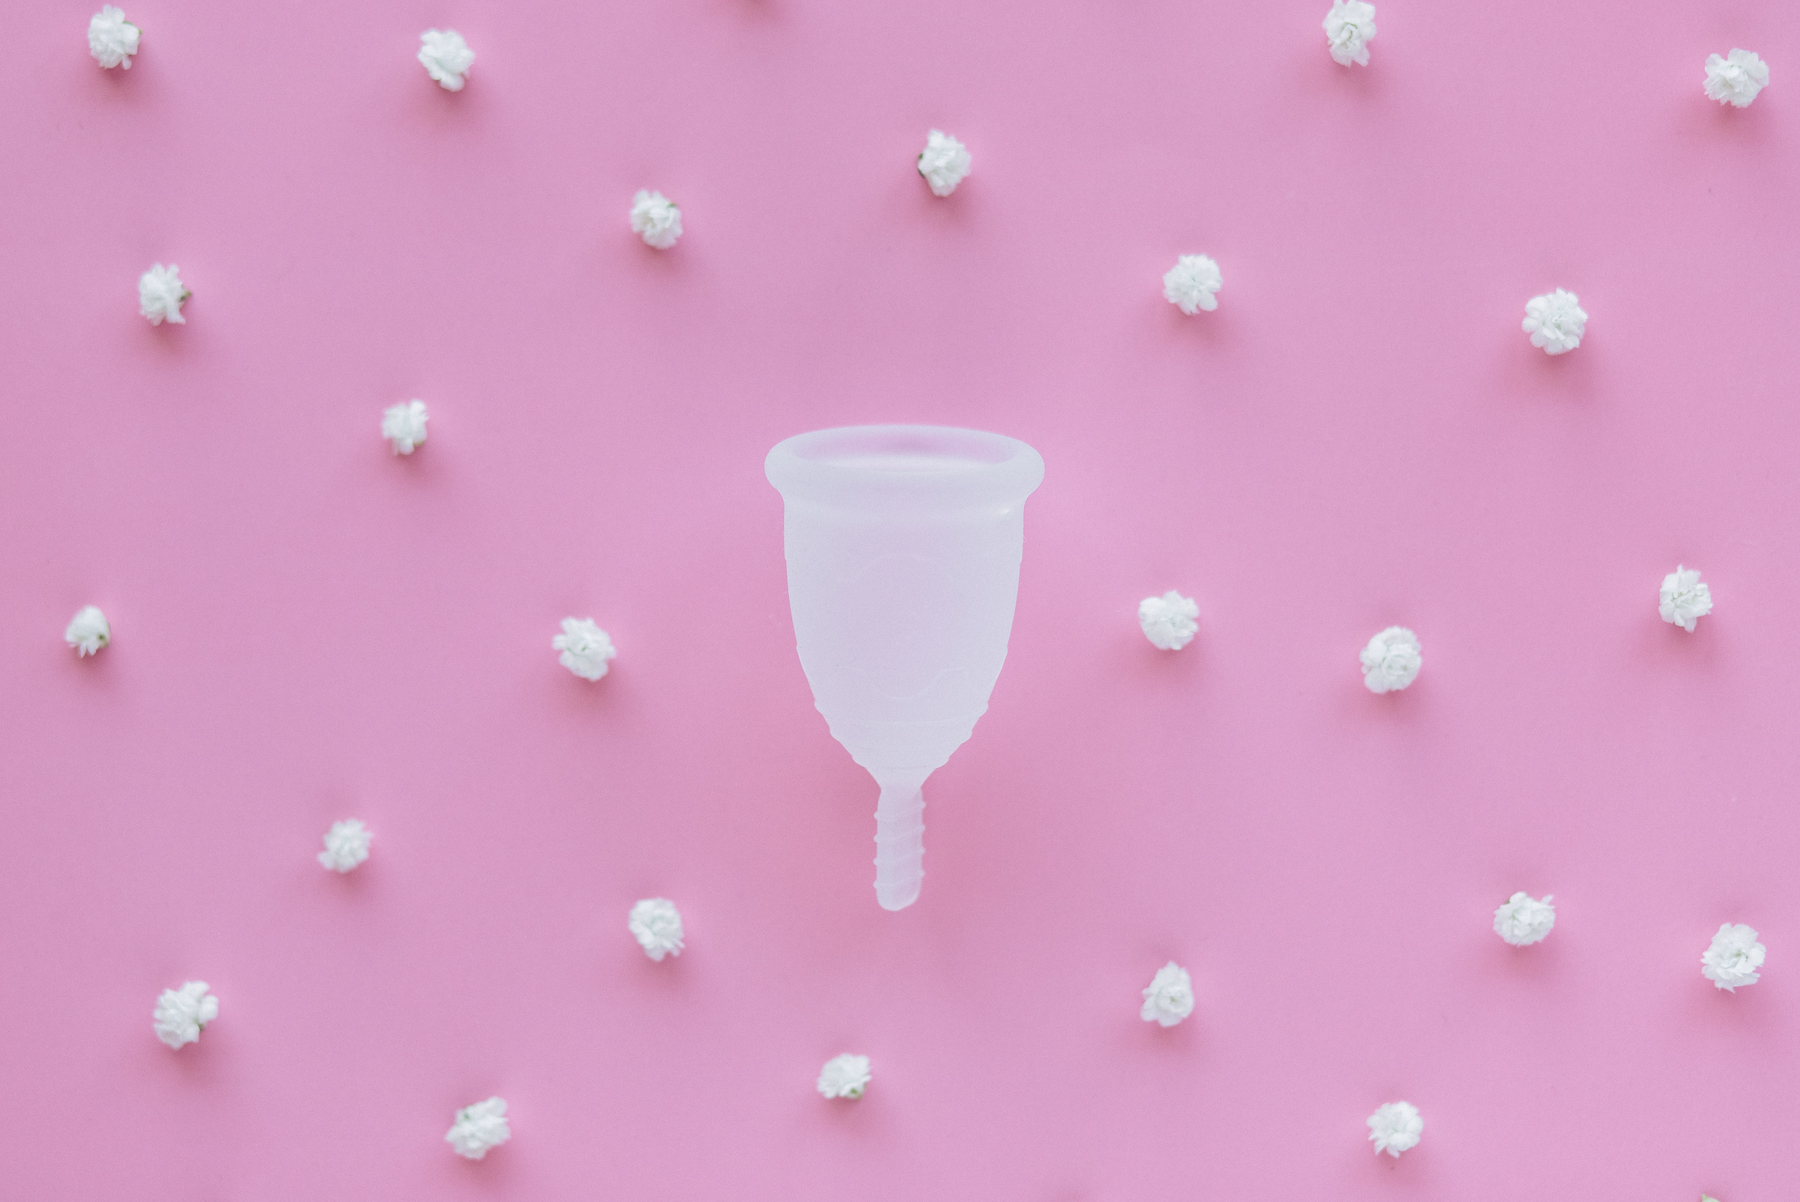 ¿Cómo usar una copa menstrual?